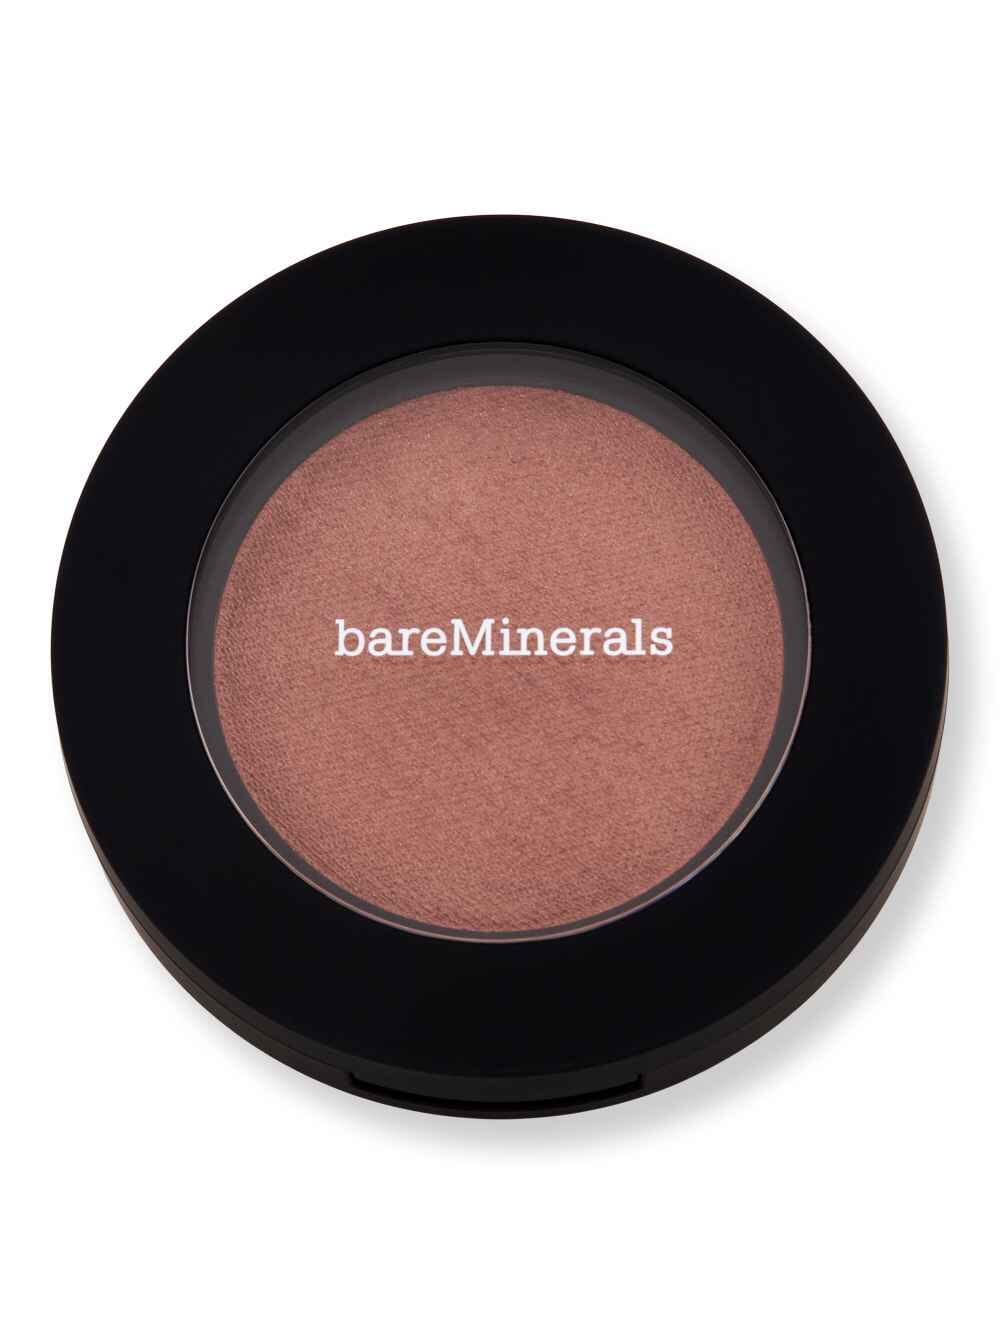 Bareminerals Bareminerals Bounce & Blur Powder Blush Blurred Buff 0.19 oz Blushes & Bronzers 